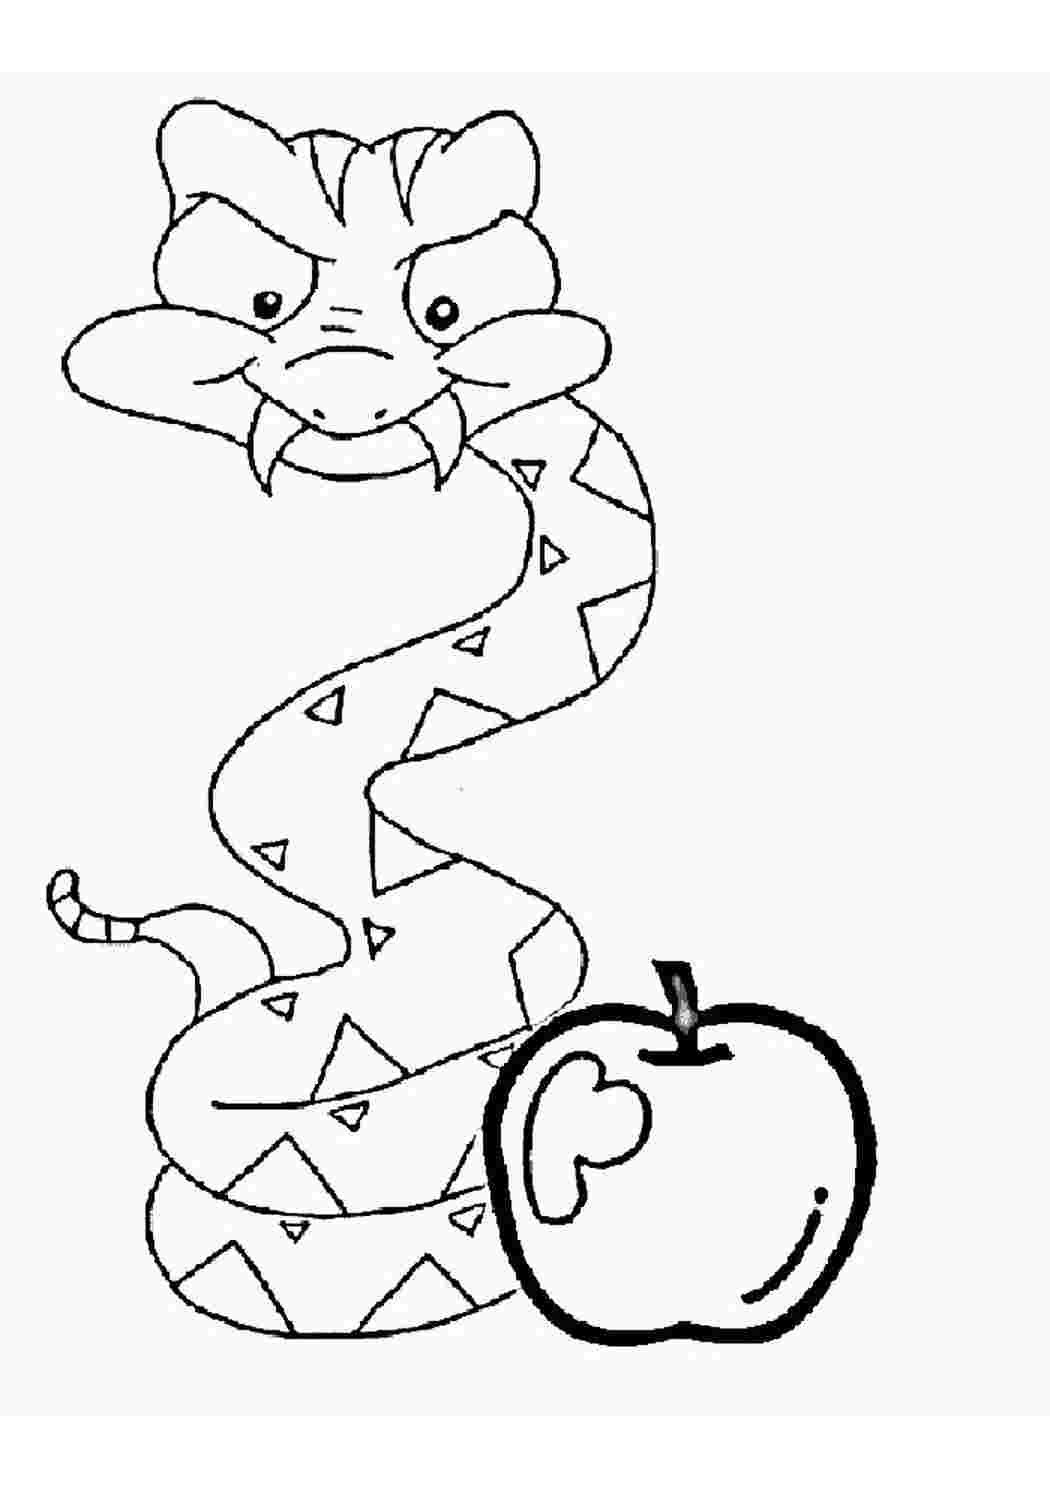 Змея раскраска для дошкольников